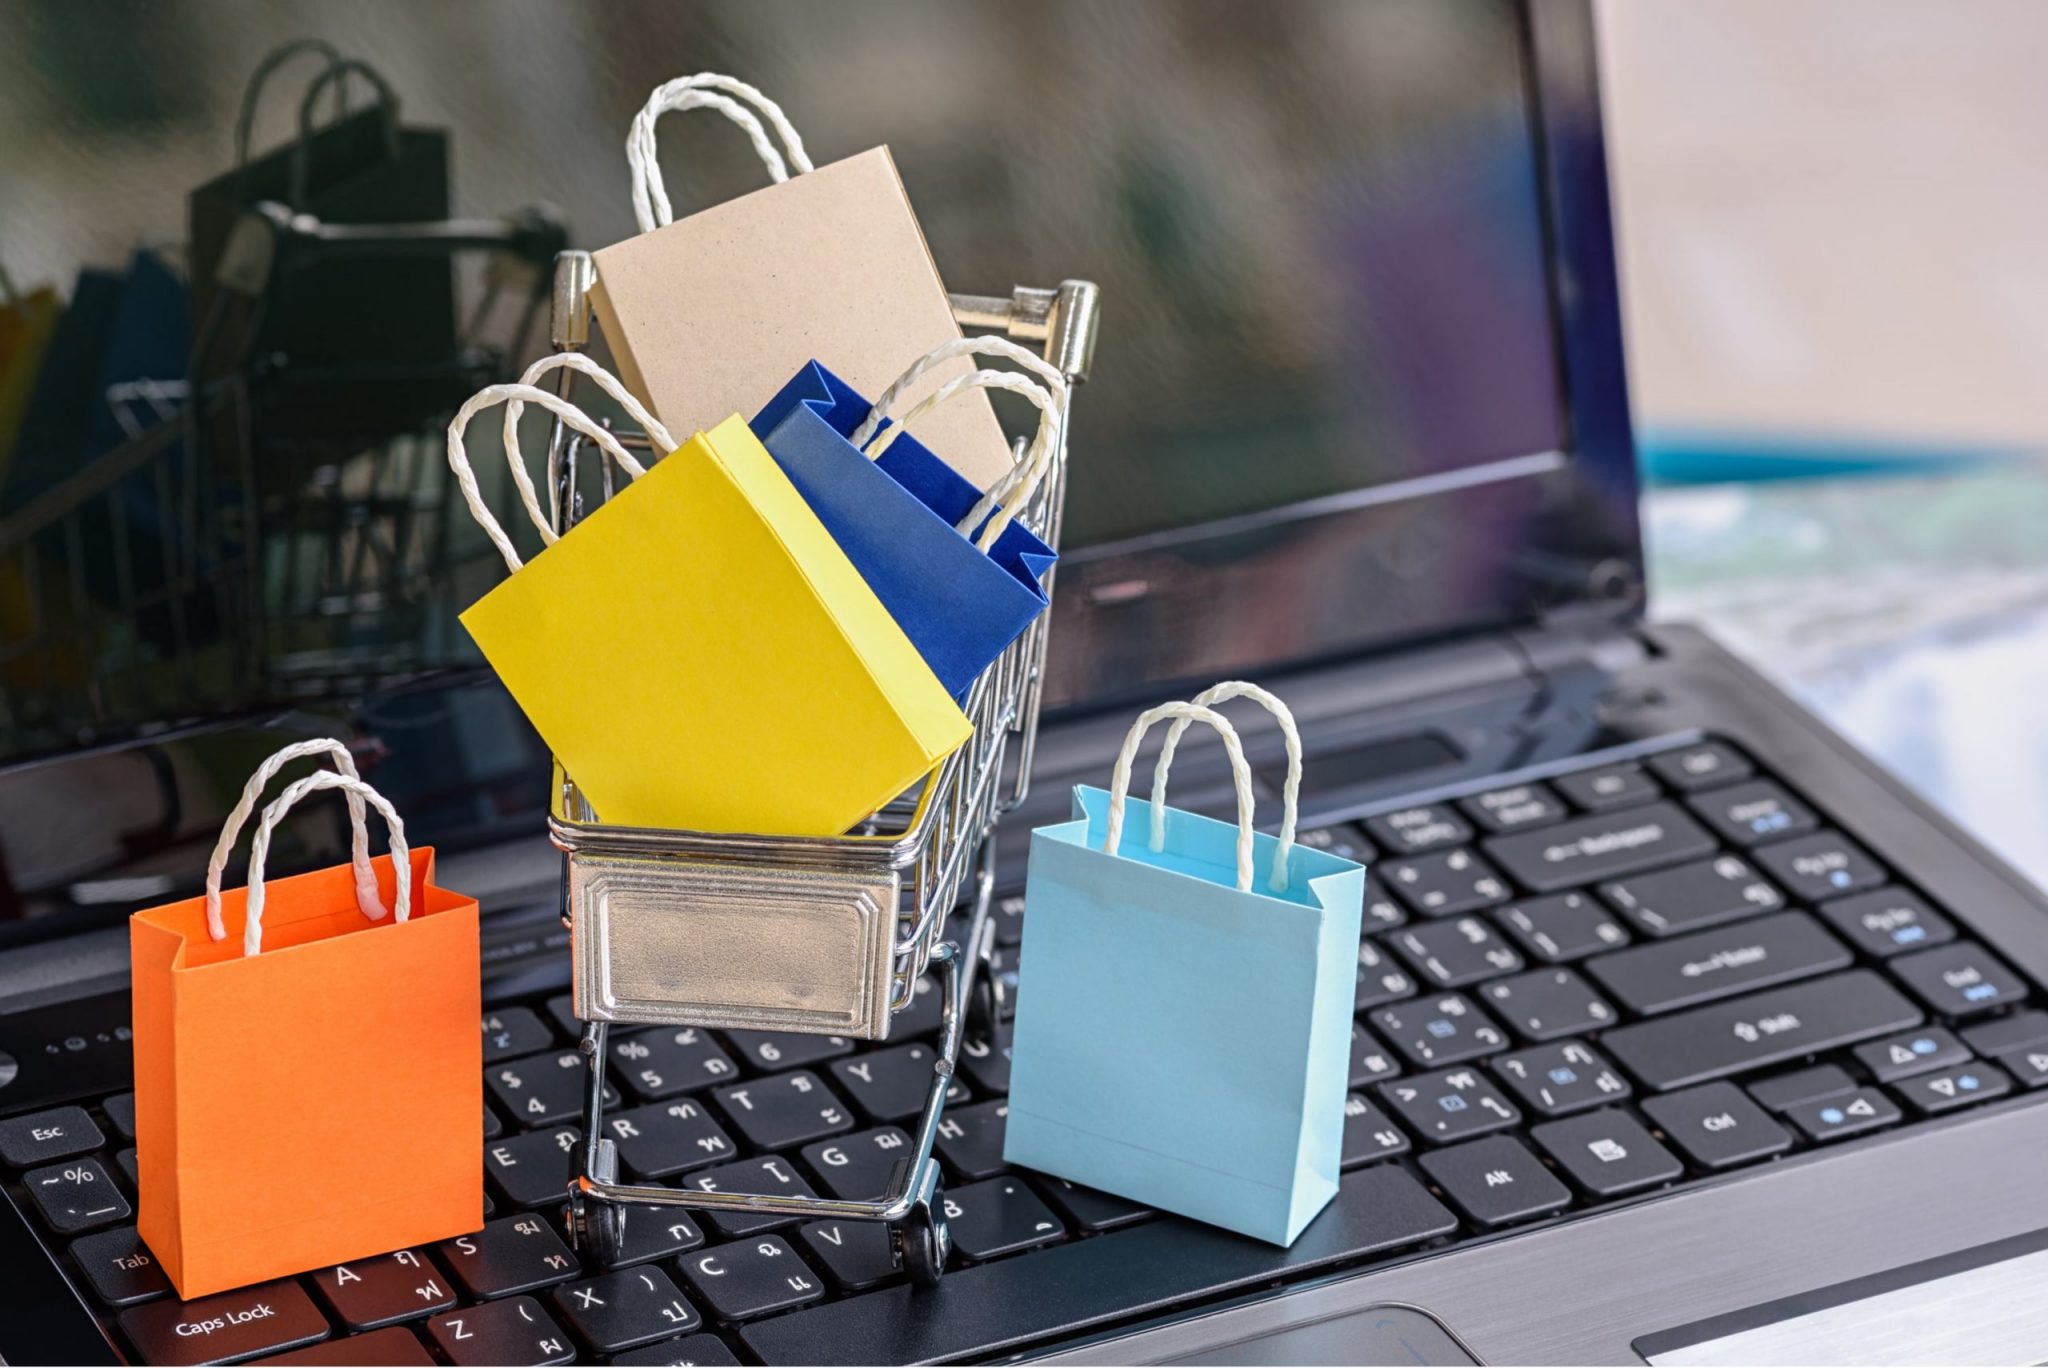 Поради кіберполіції черкащанам під час онлайн-шопінгу